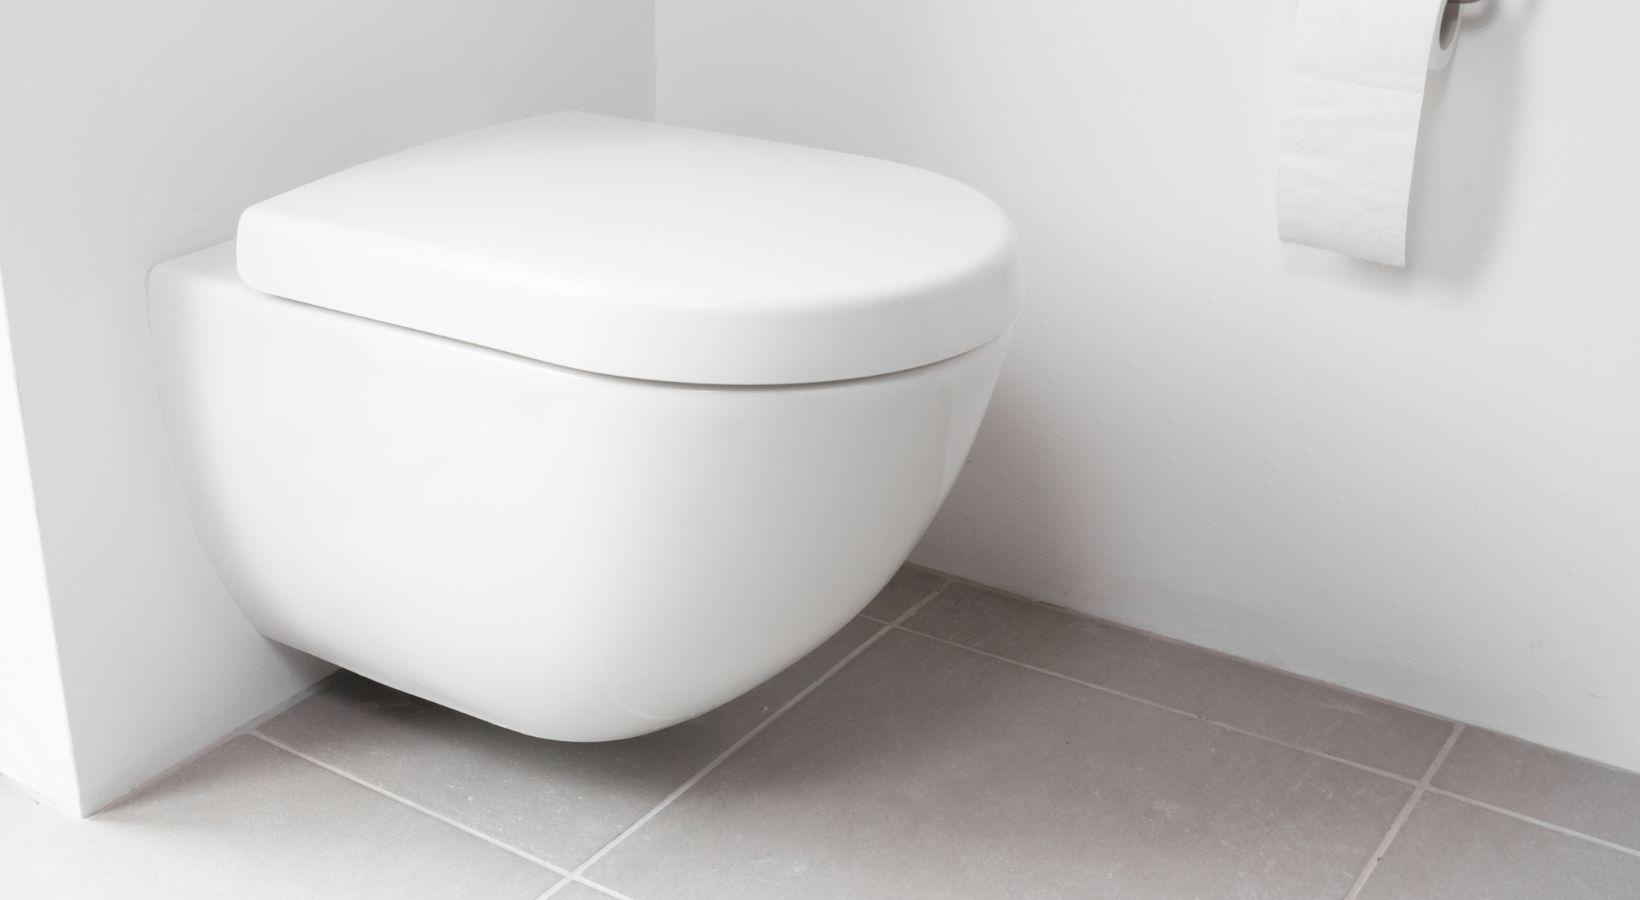 Remplacer un abattant de wc : conseils et étapes à suivre